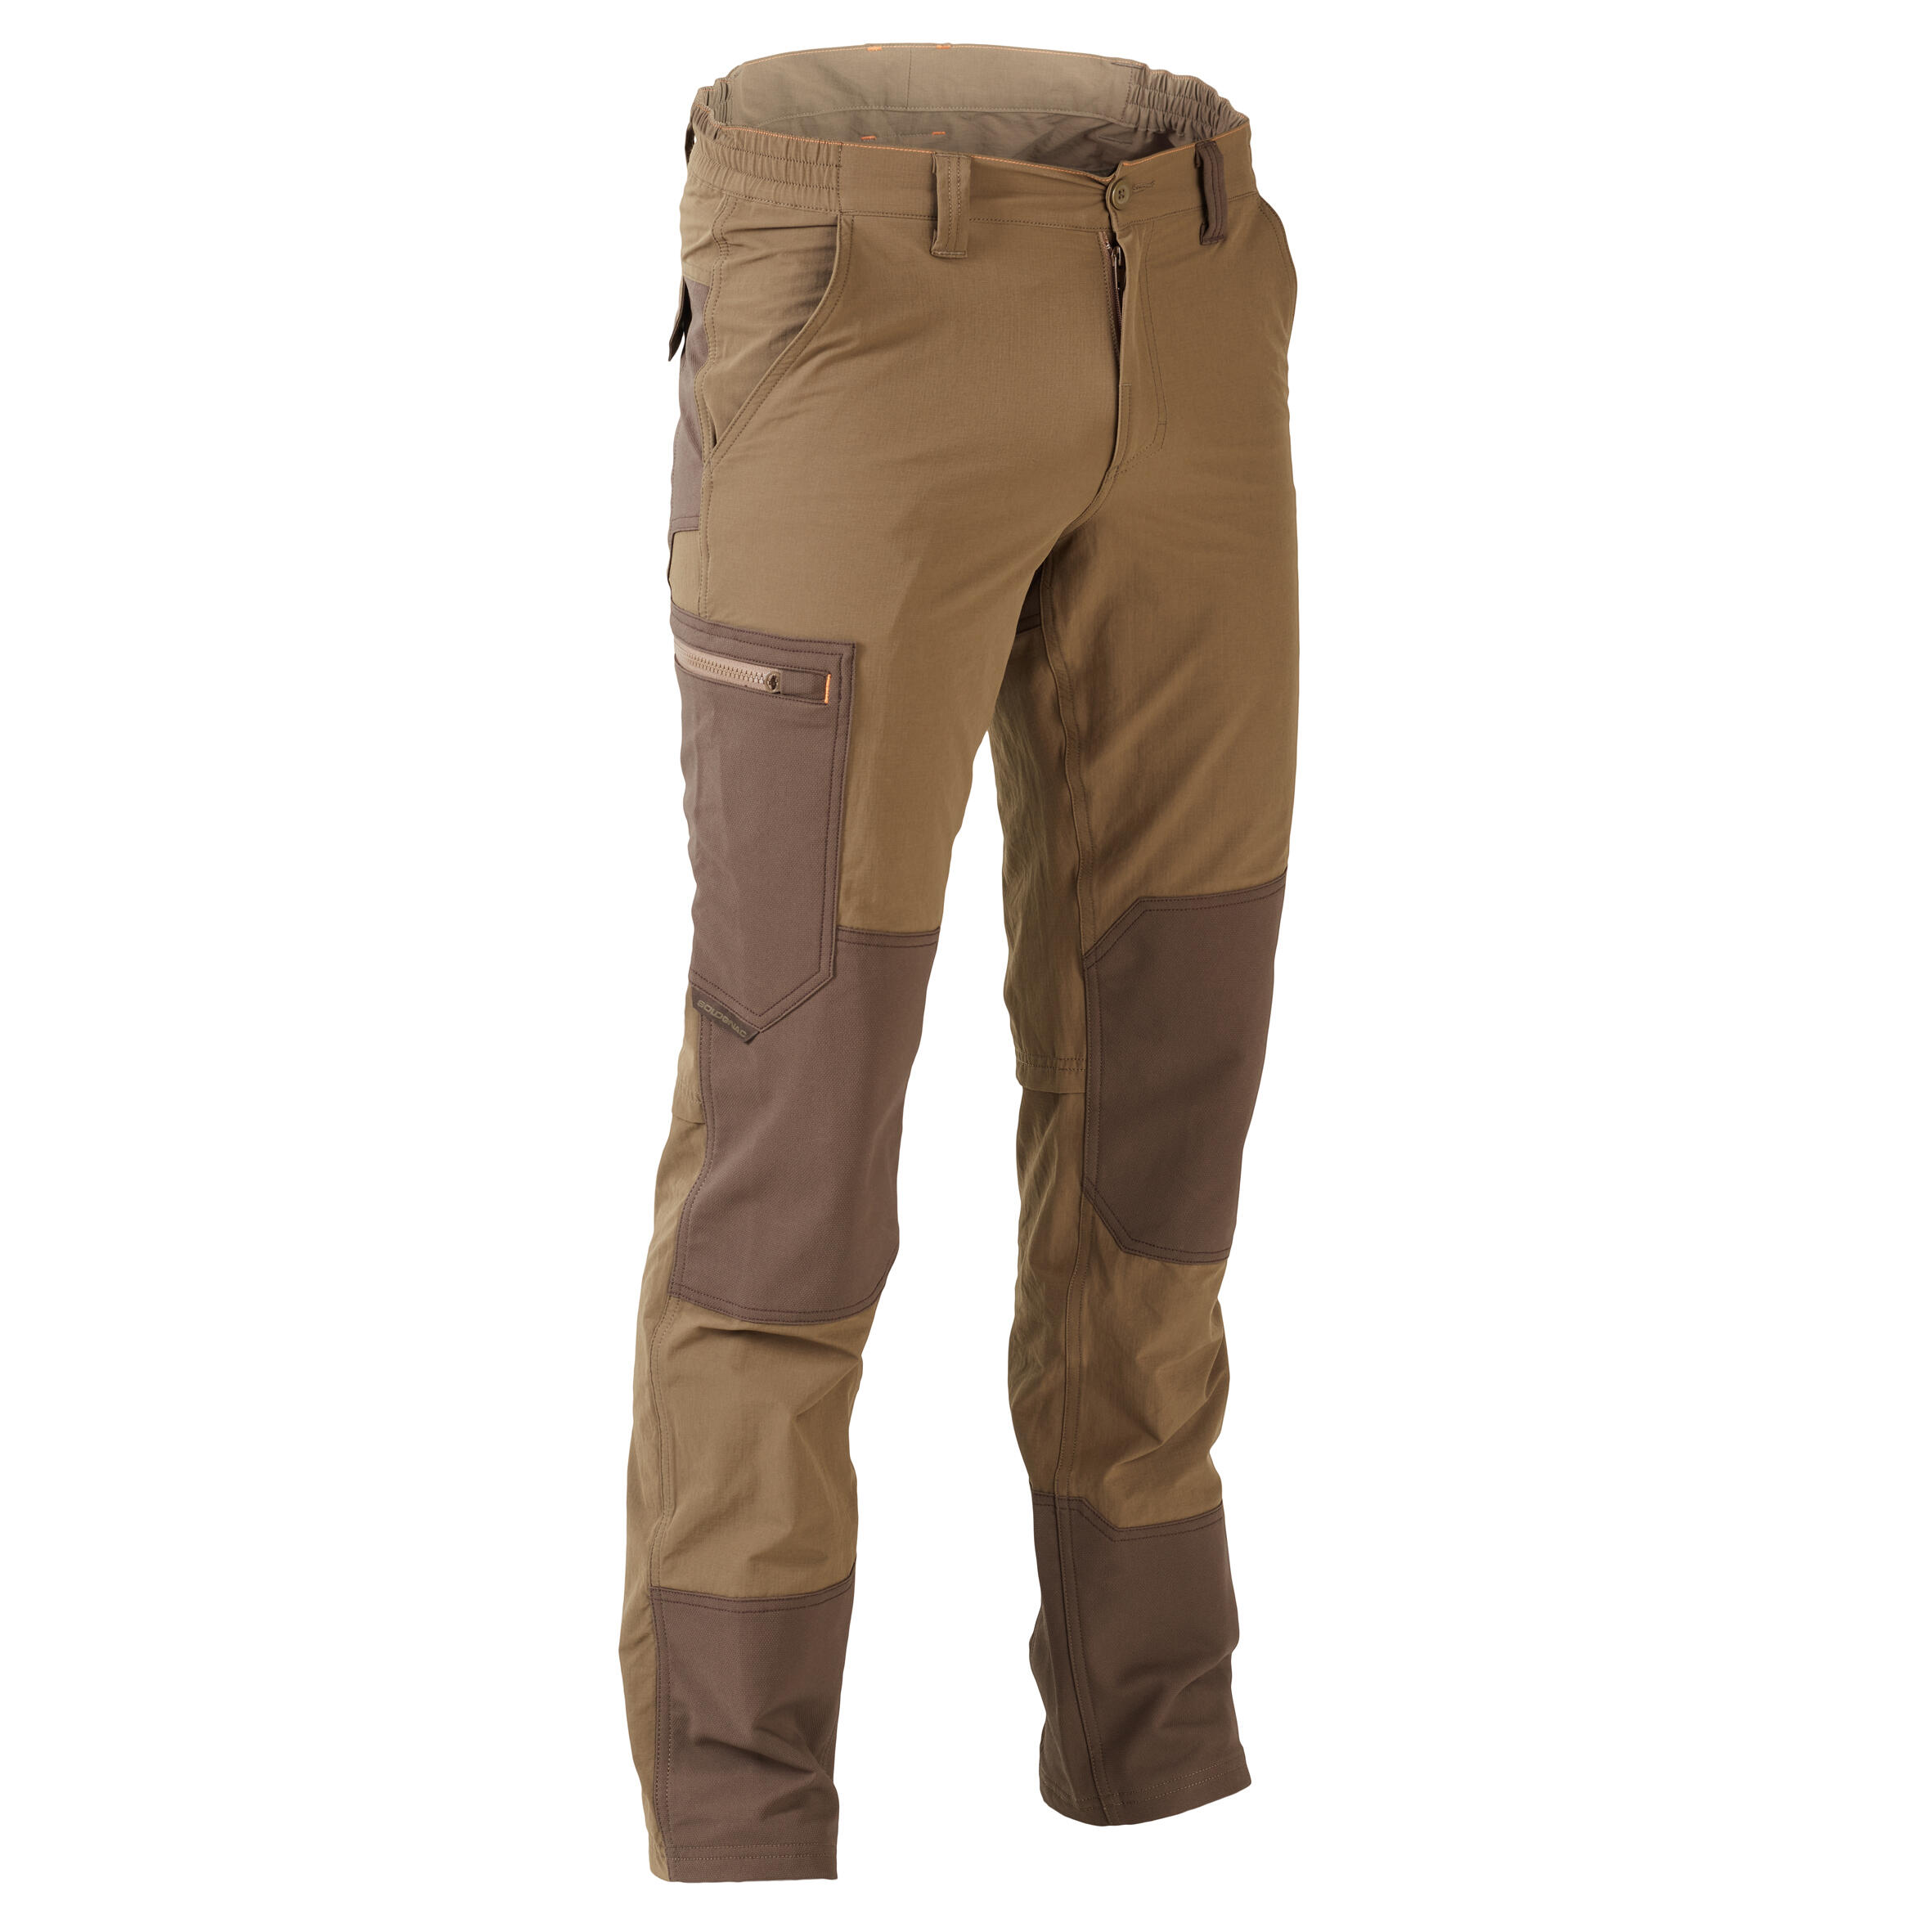 Pantalon 520 Respirant și Rezistent maro Bărbați La Oferta Online decathlon imagine La Oferta Online